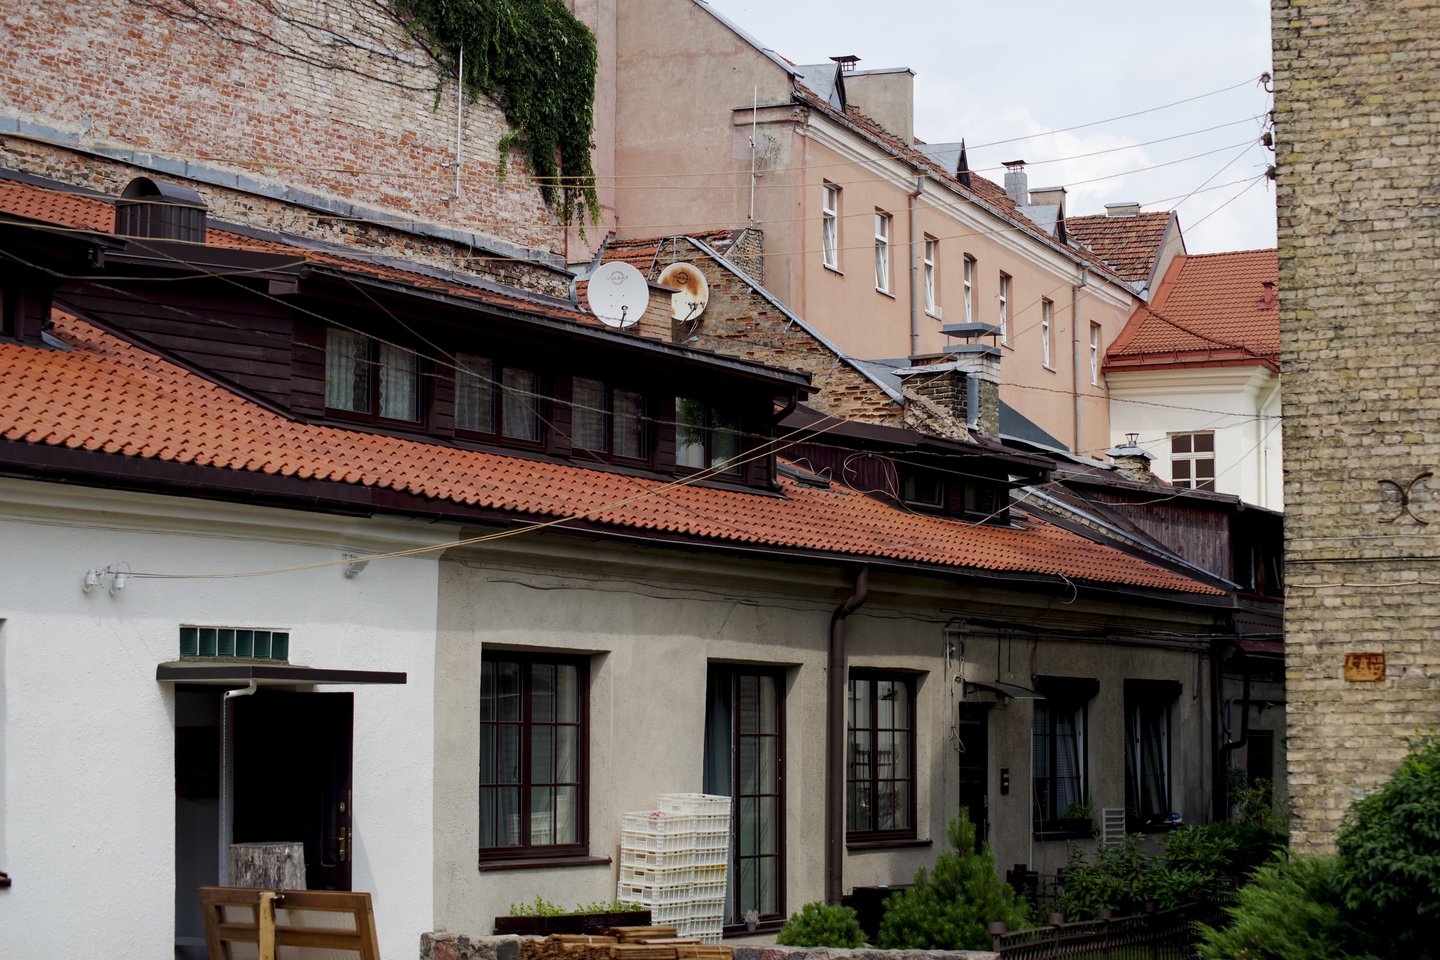 2021 m. gruodį Vilniaus mieste susitarta dėl 481 būsto įsigijimo (496 nauji susitarimai, 15 susitarimų nutraukimų).<br>V.Ščiavinsko nuotr.